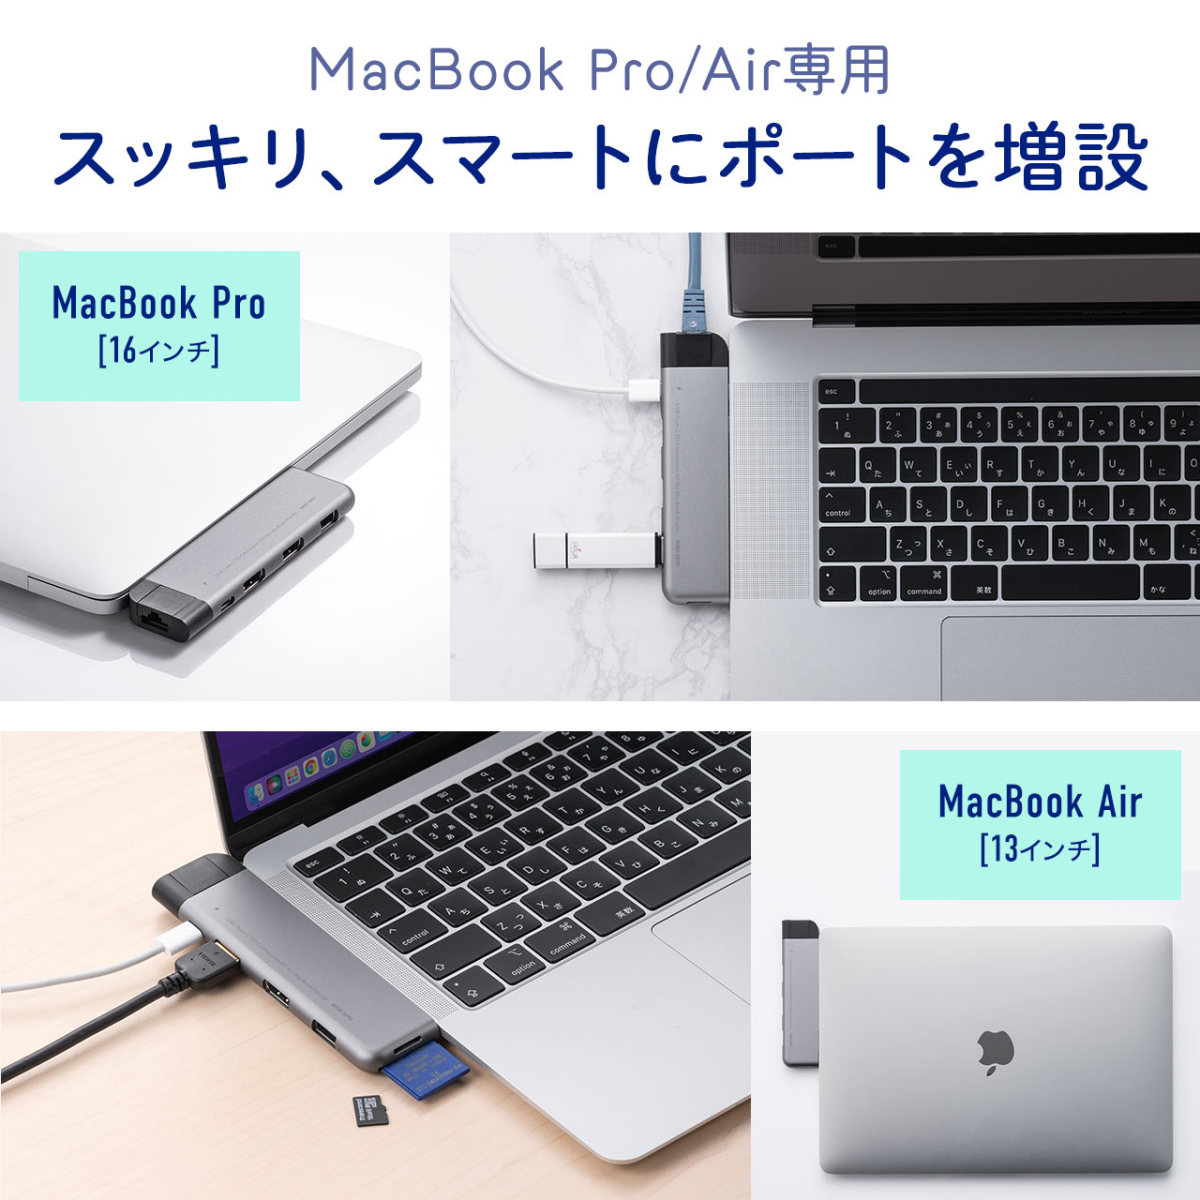 MacBook USB ハブ ドッキングステーション 7ポート Type-C HDMI microSD SDカード LAN USB3.2  MacBook Pro MacBook Air マックブック